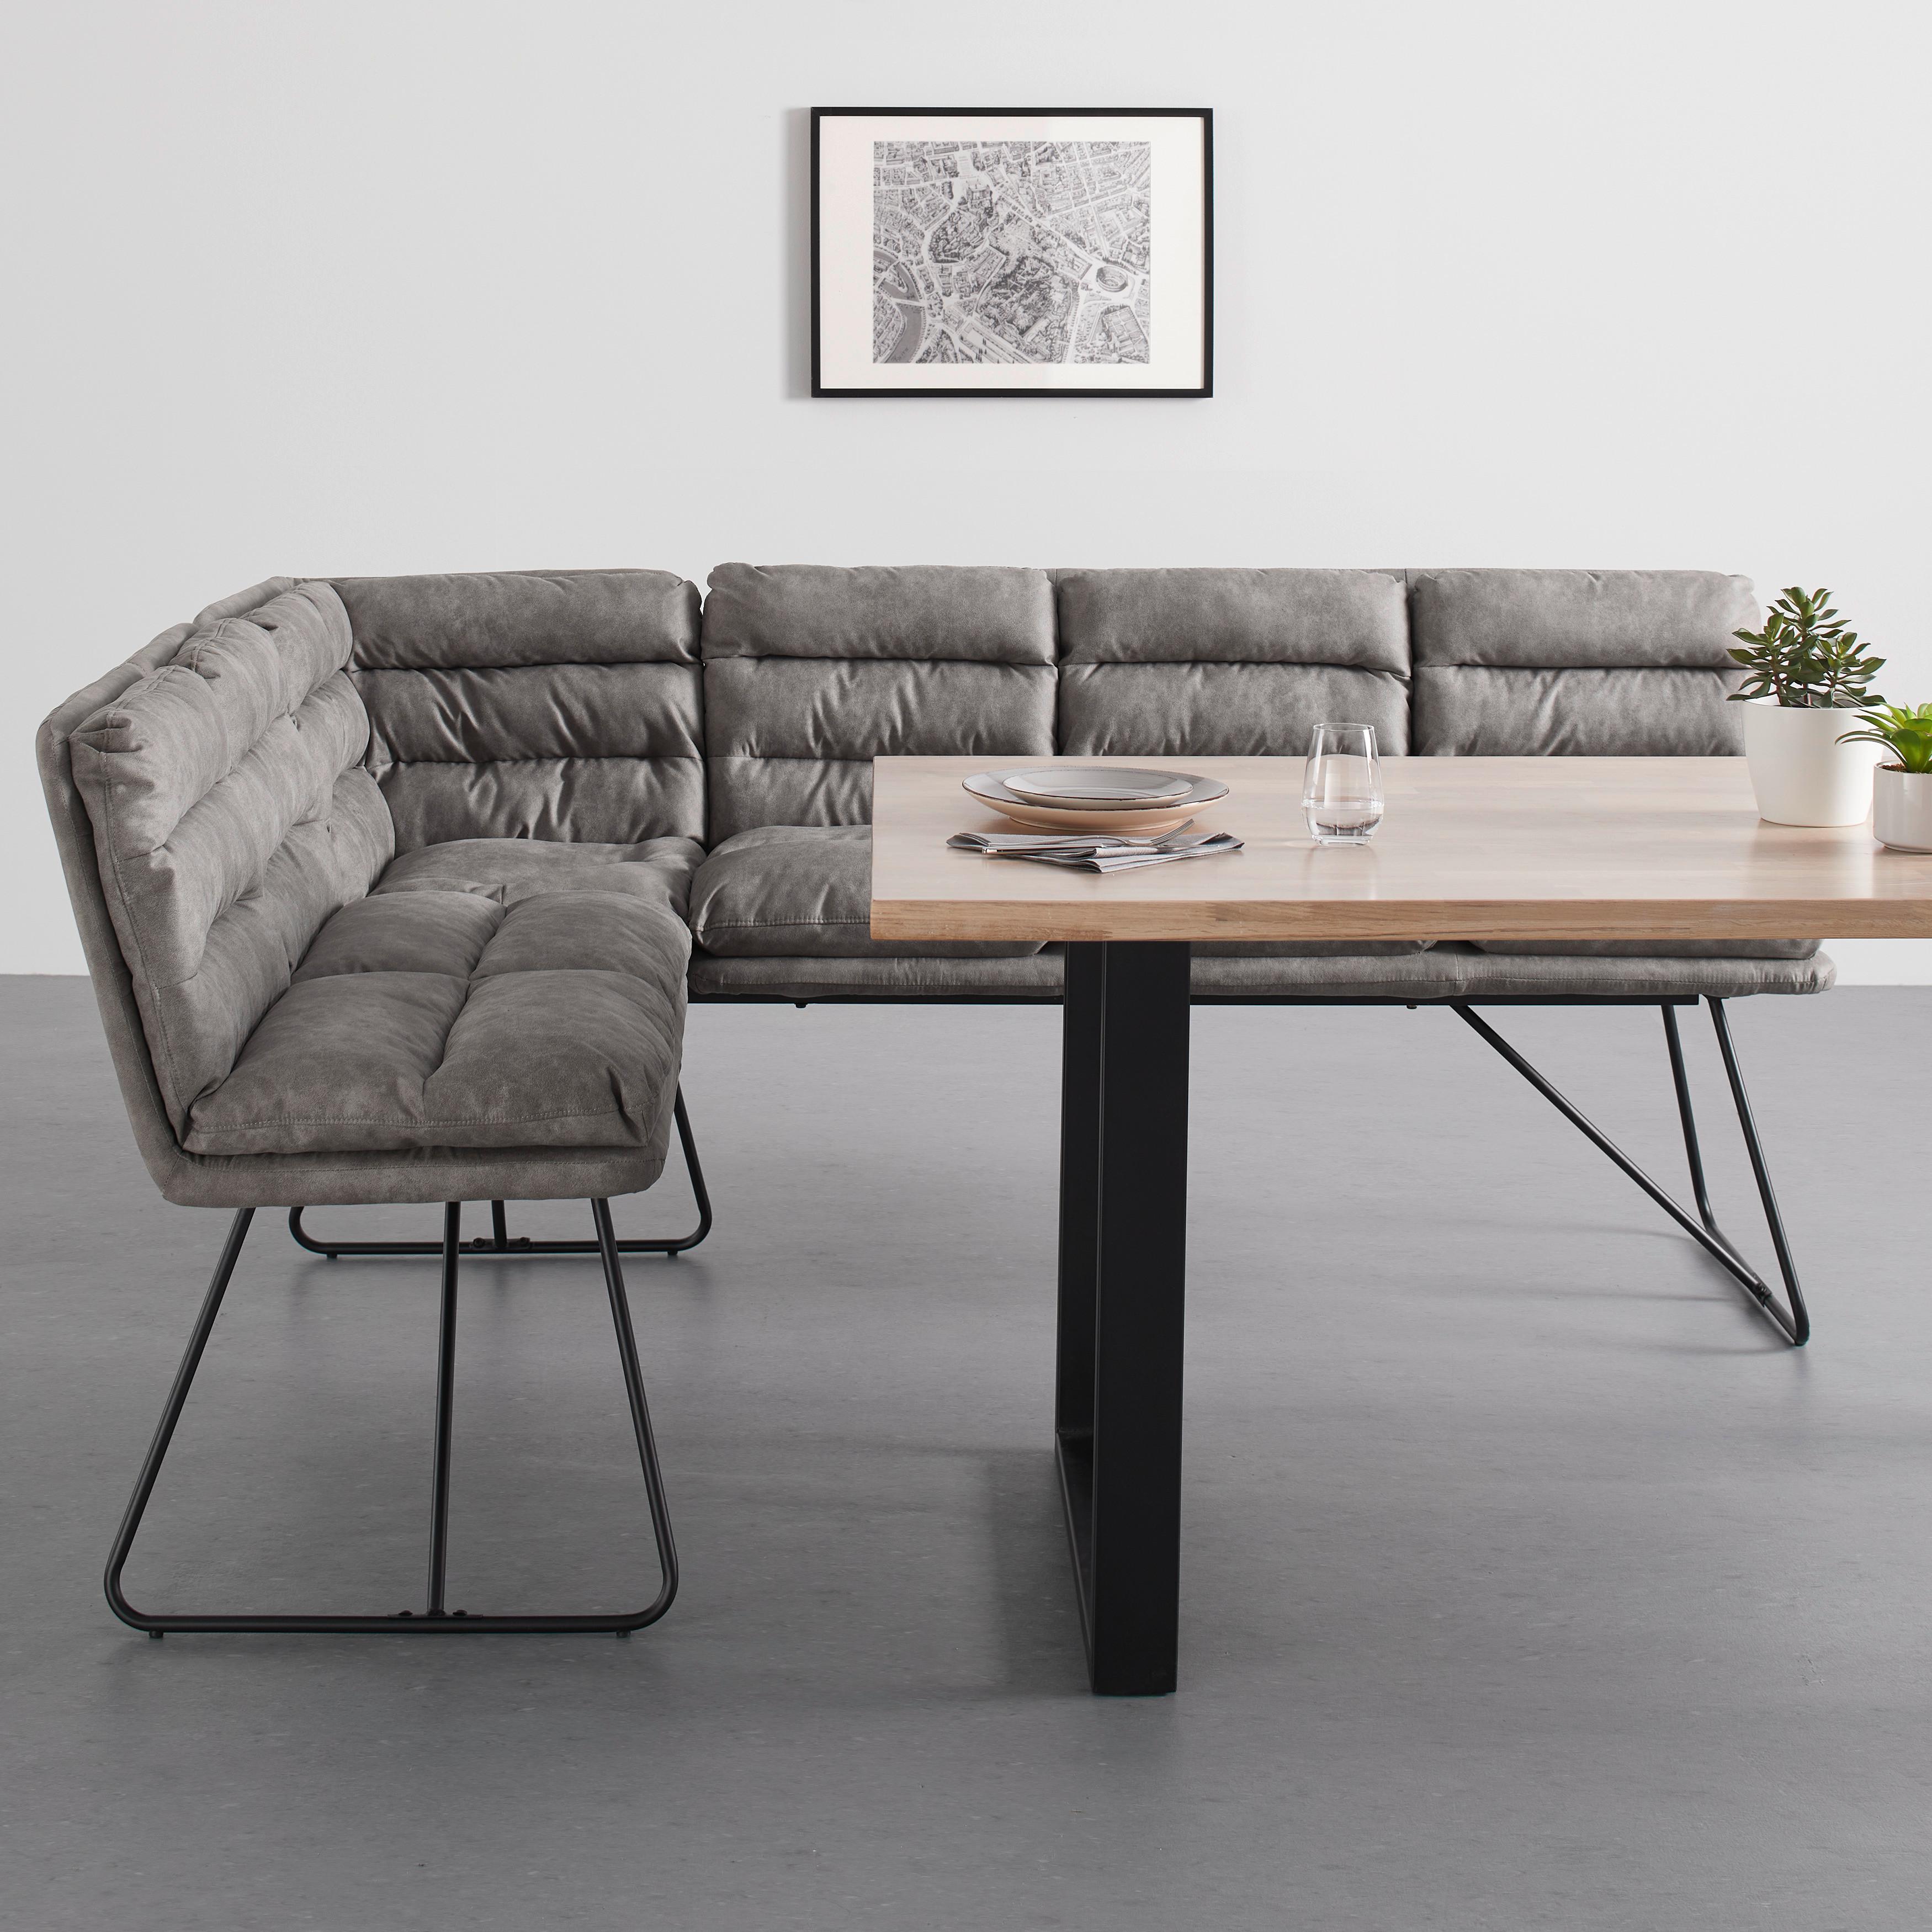 Sitzbank "Kona", grau, Gepolstert - Schwarz/Grau, MODERN, Textil/Metall (154/201cm) - Bessagi Home